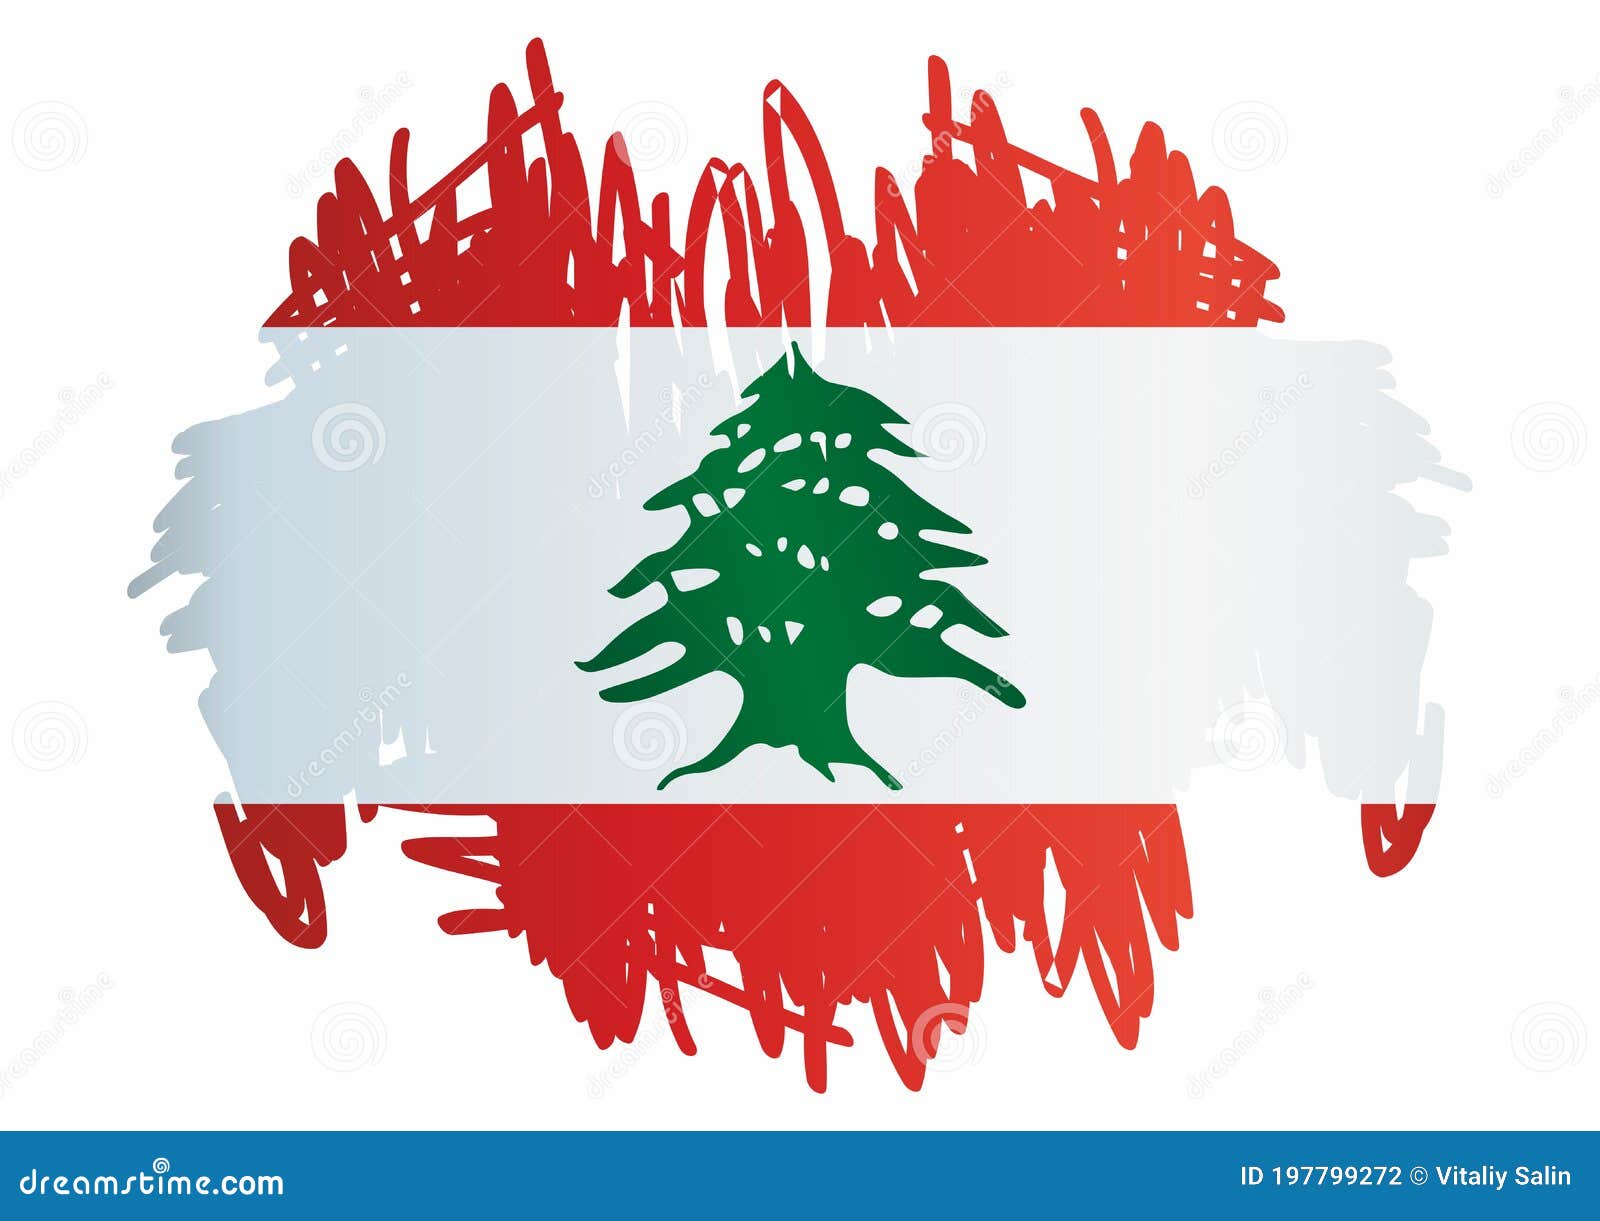 黎巴嫩旗子 库存图片. 图片 包括有 设计, 风化, 纹理, 纸张, 墙壁, 黎巴嫩, 国家, 减速火箭 - 87806437